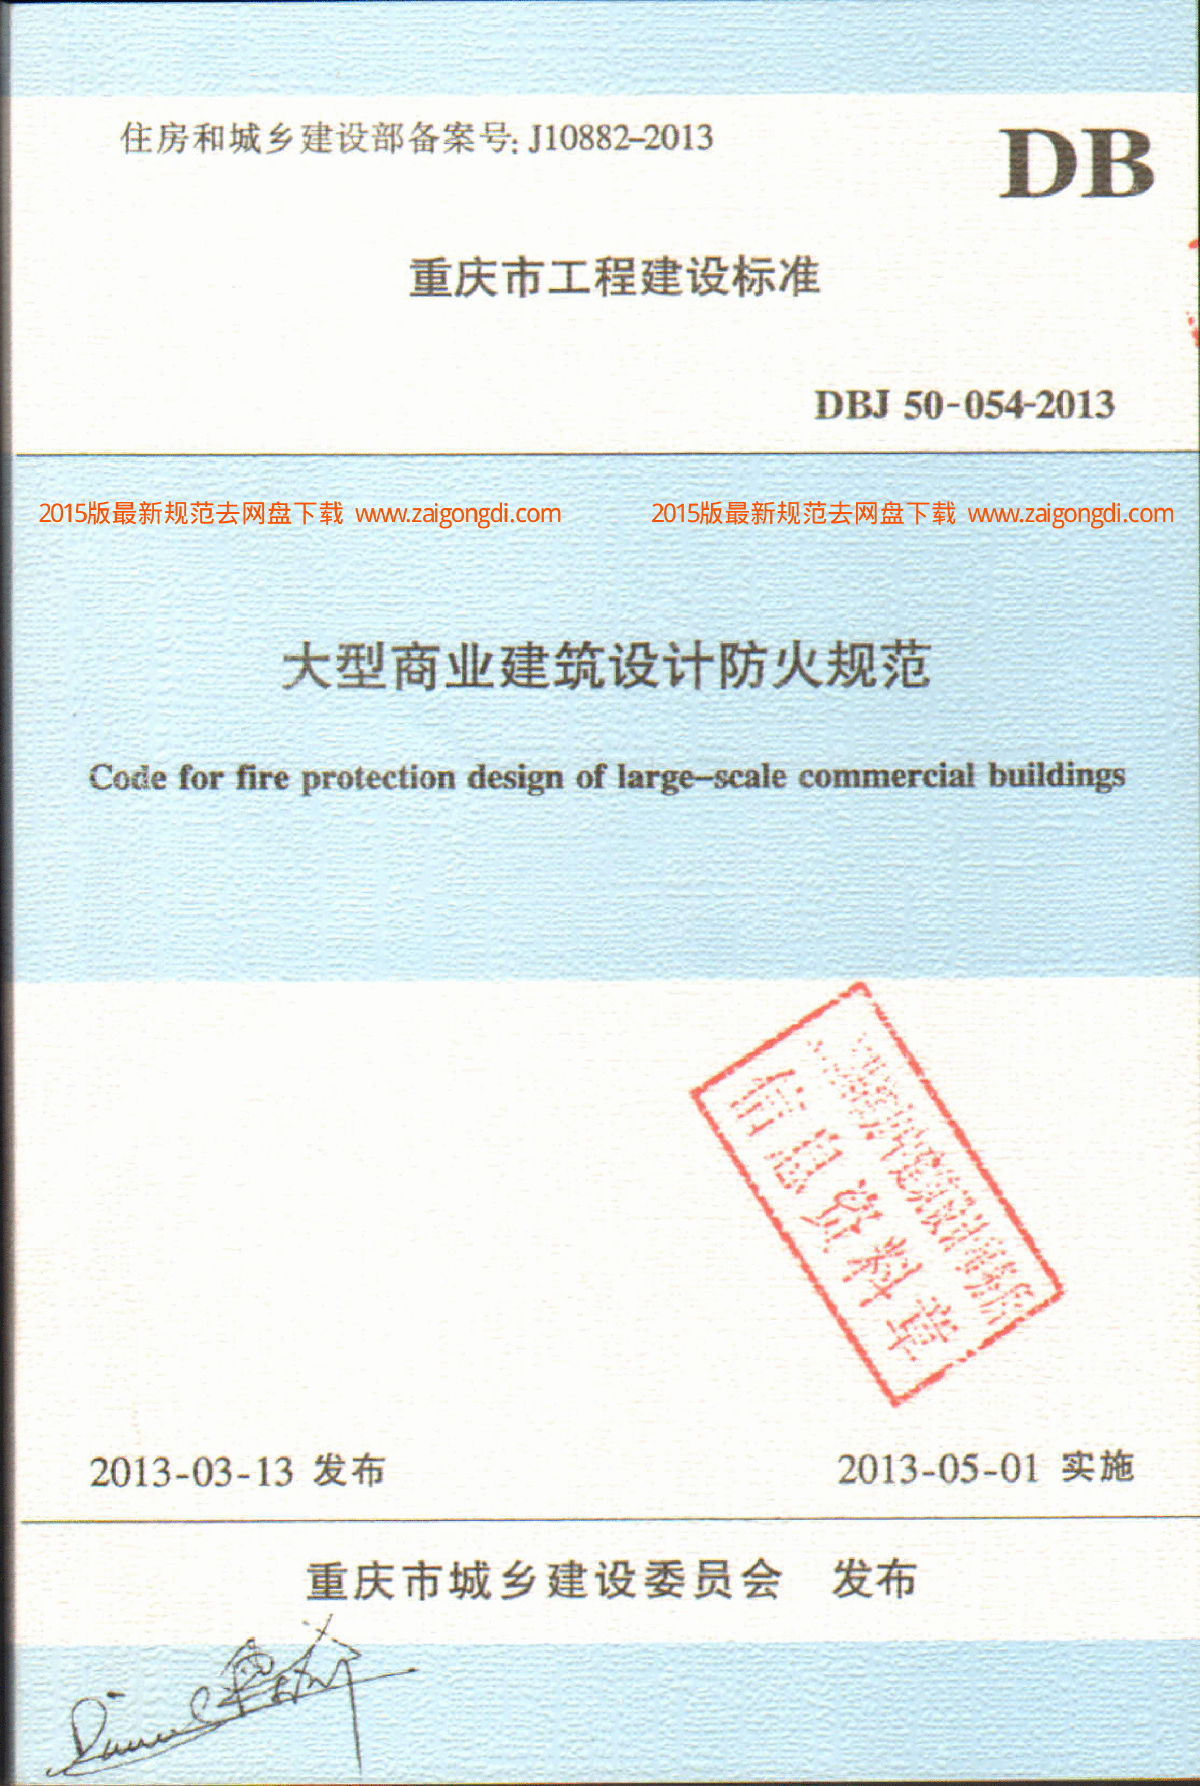 DBJ 50-054-2013 重庆市大型商业建筑设计防火规范